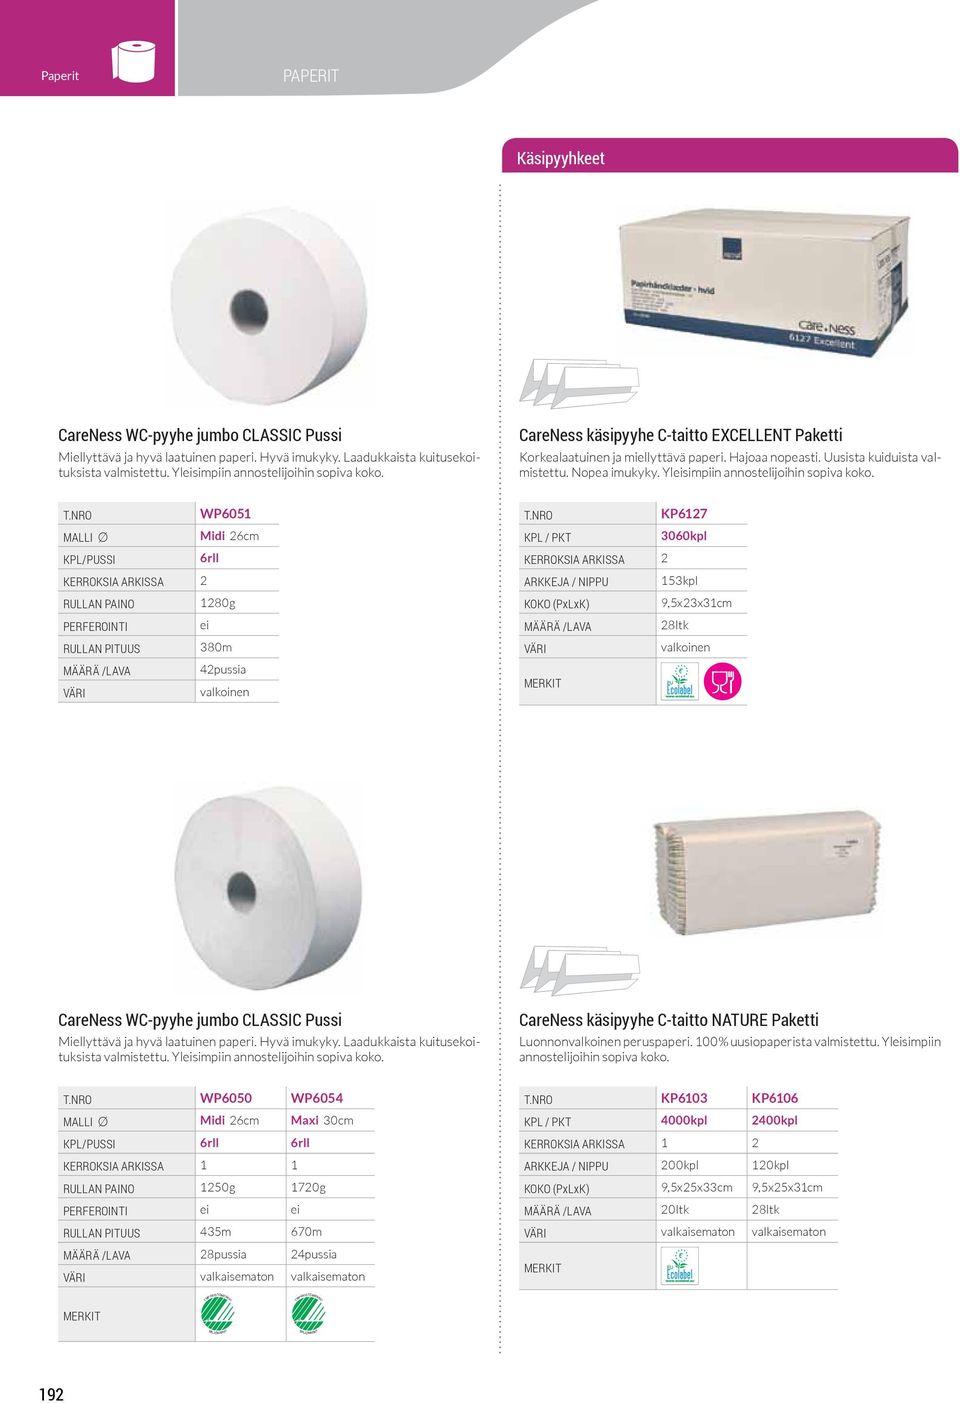 WC-pyyhe jumbo CLASSIC Pussi valmistettu. Yleisimpiin CareNess käsipyyhe C-taitto NATURE Paketti Luonnon peruspaperi. 100% uusiopaperista valmistettu.